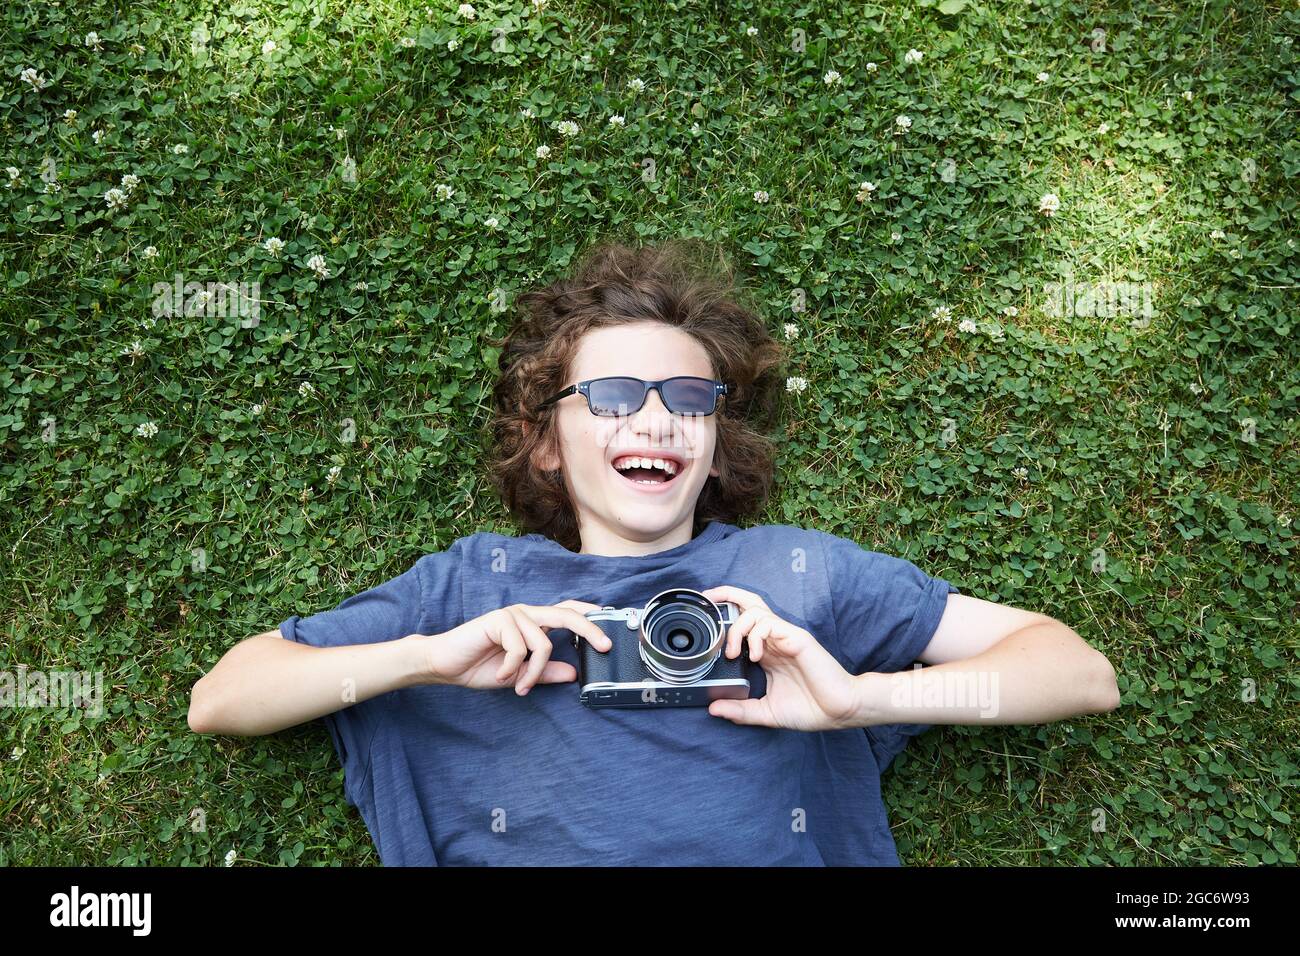 Junge liegt im Gras mit Kamera Stockfoto